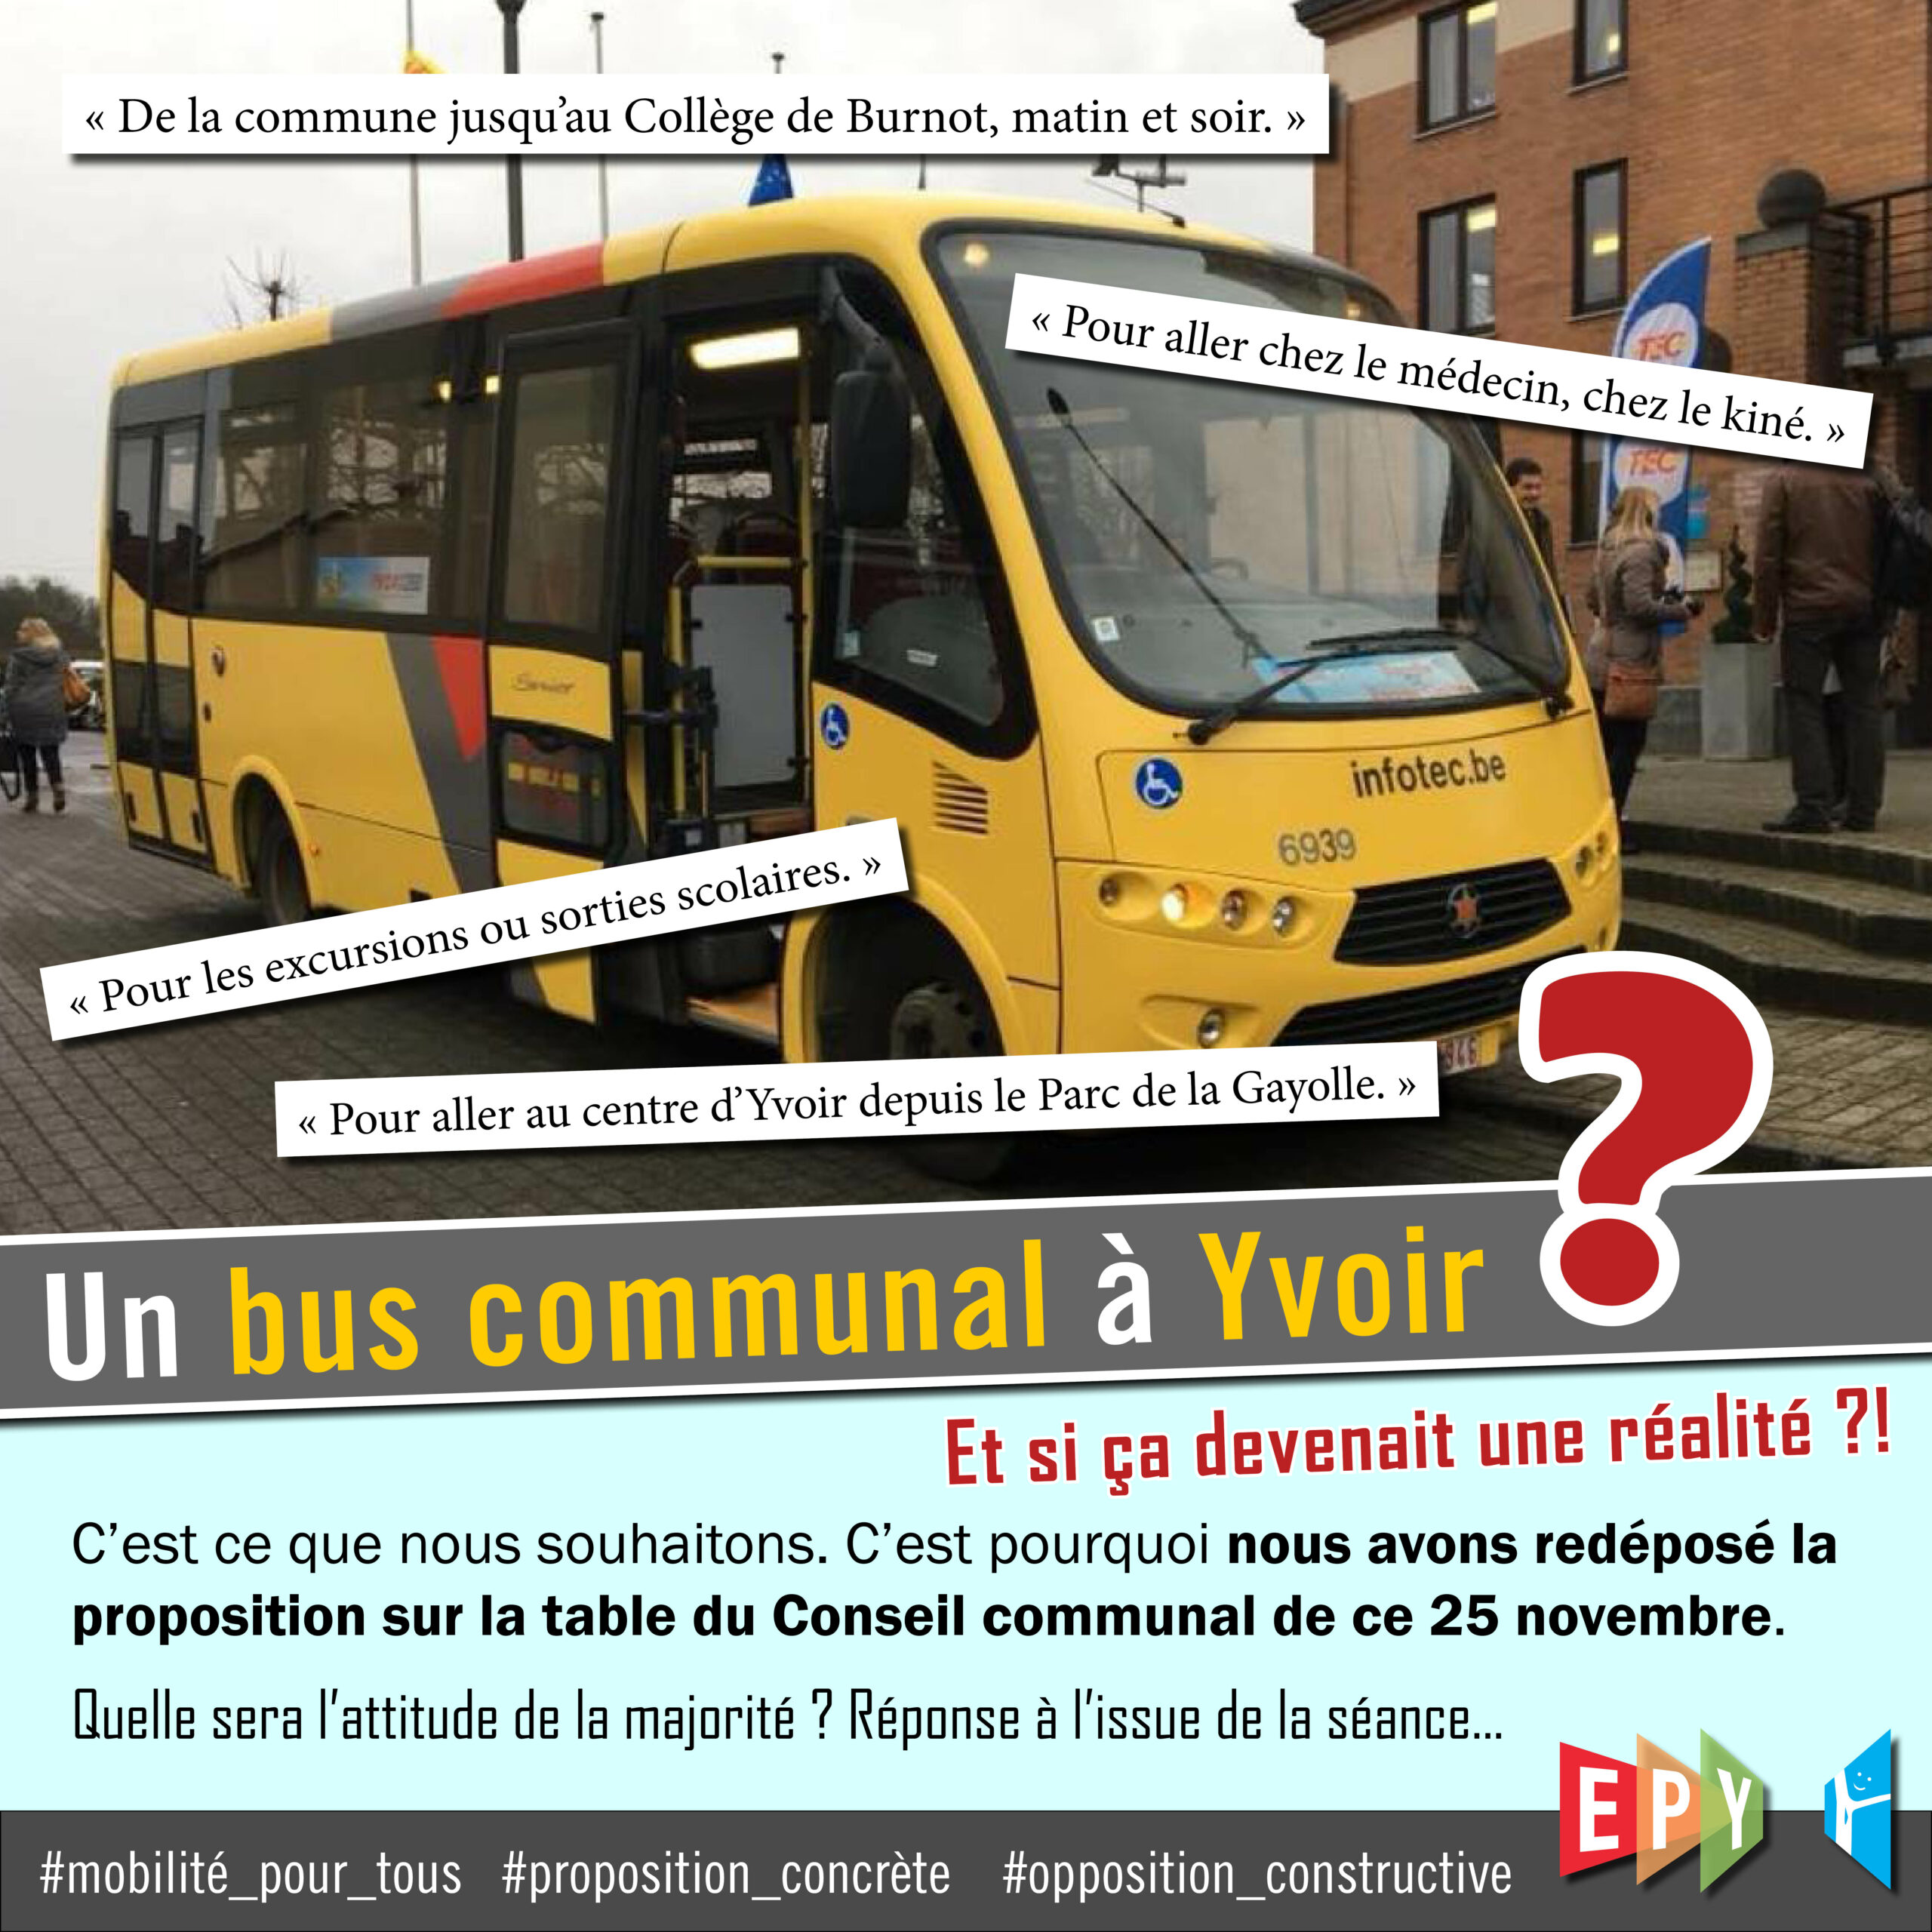 Un bus communal à Yvoir : le rêve pourrait-il devenir réalité ?